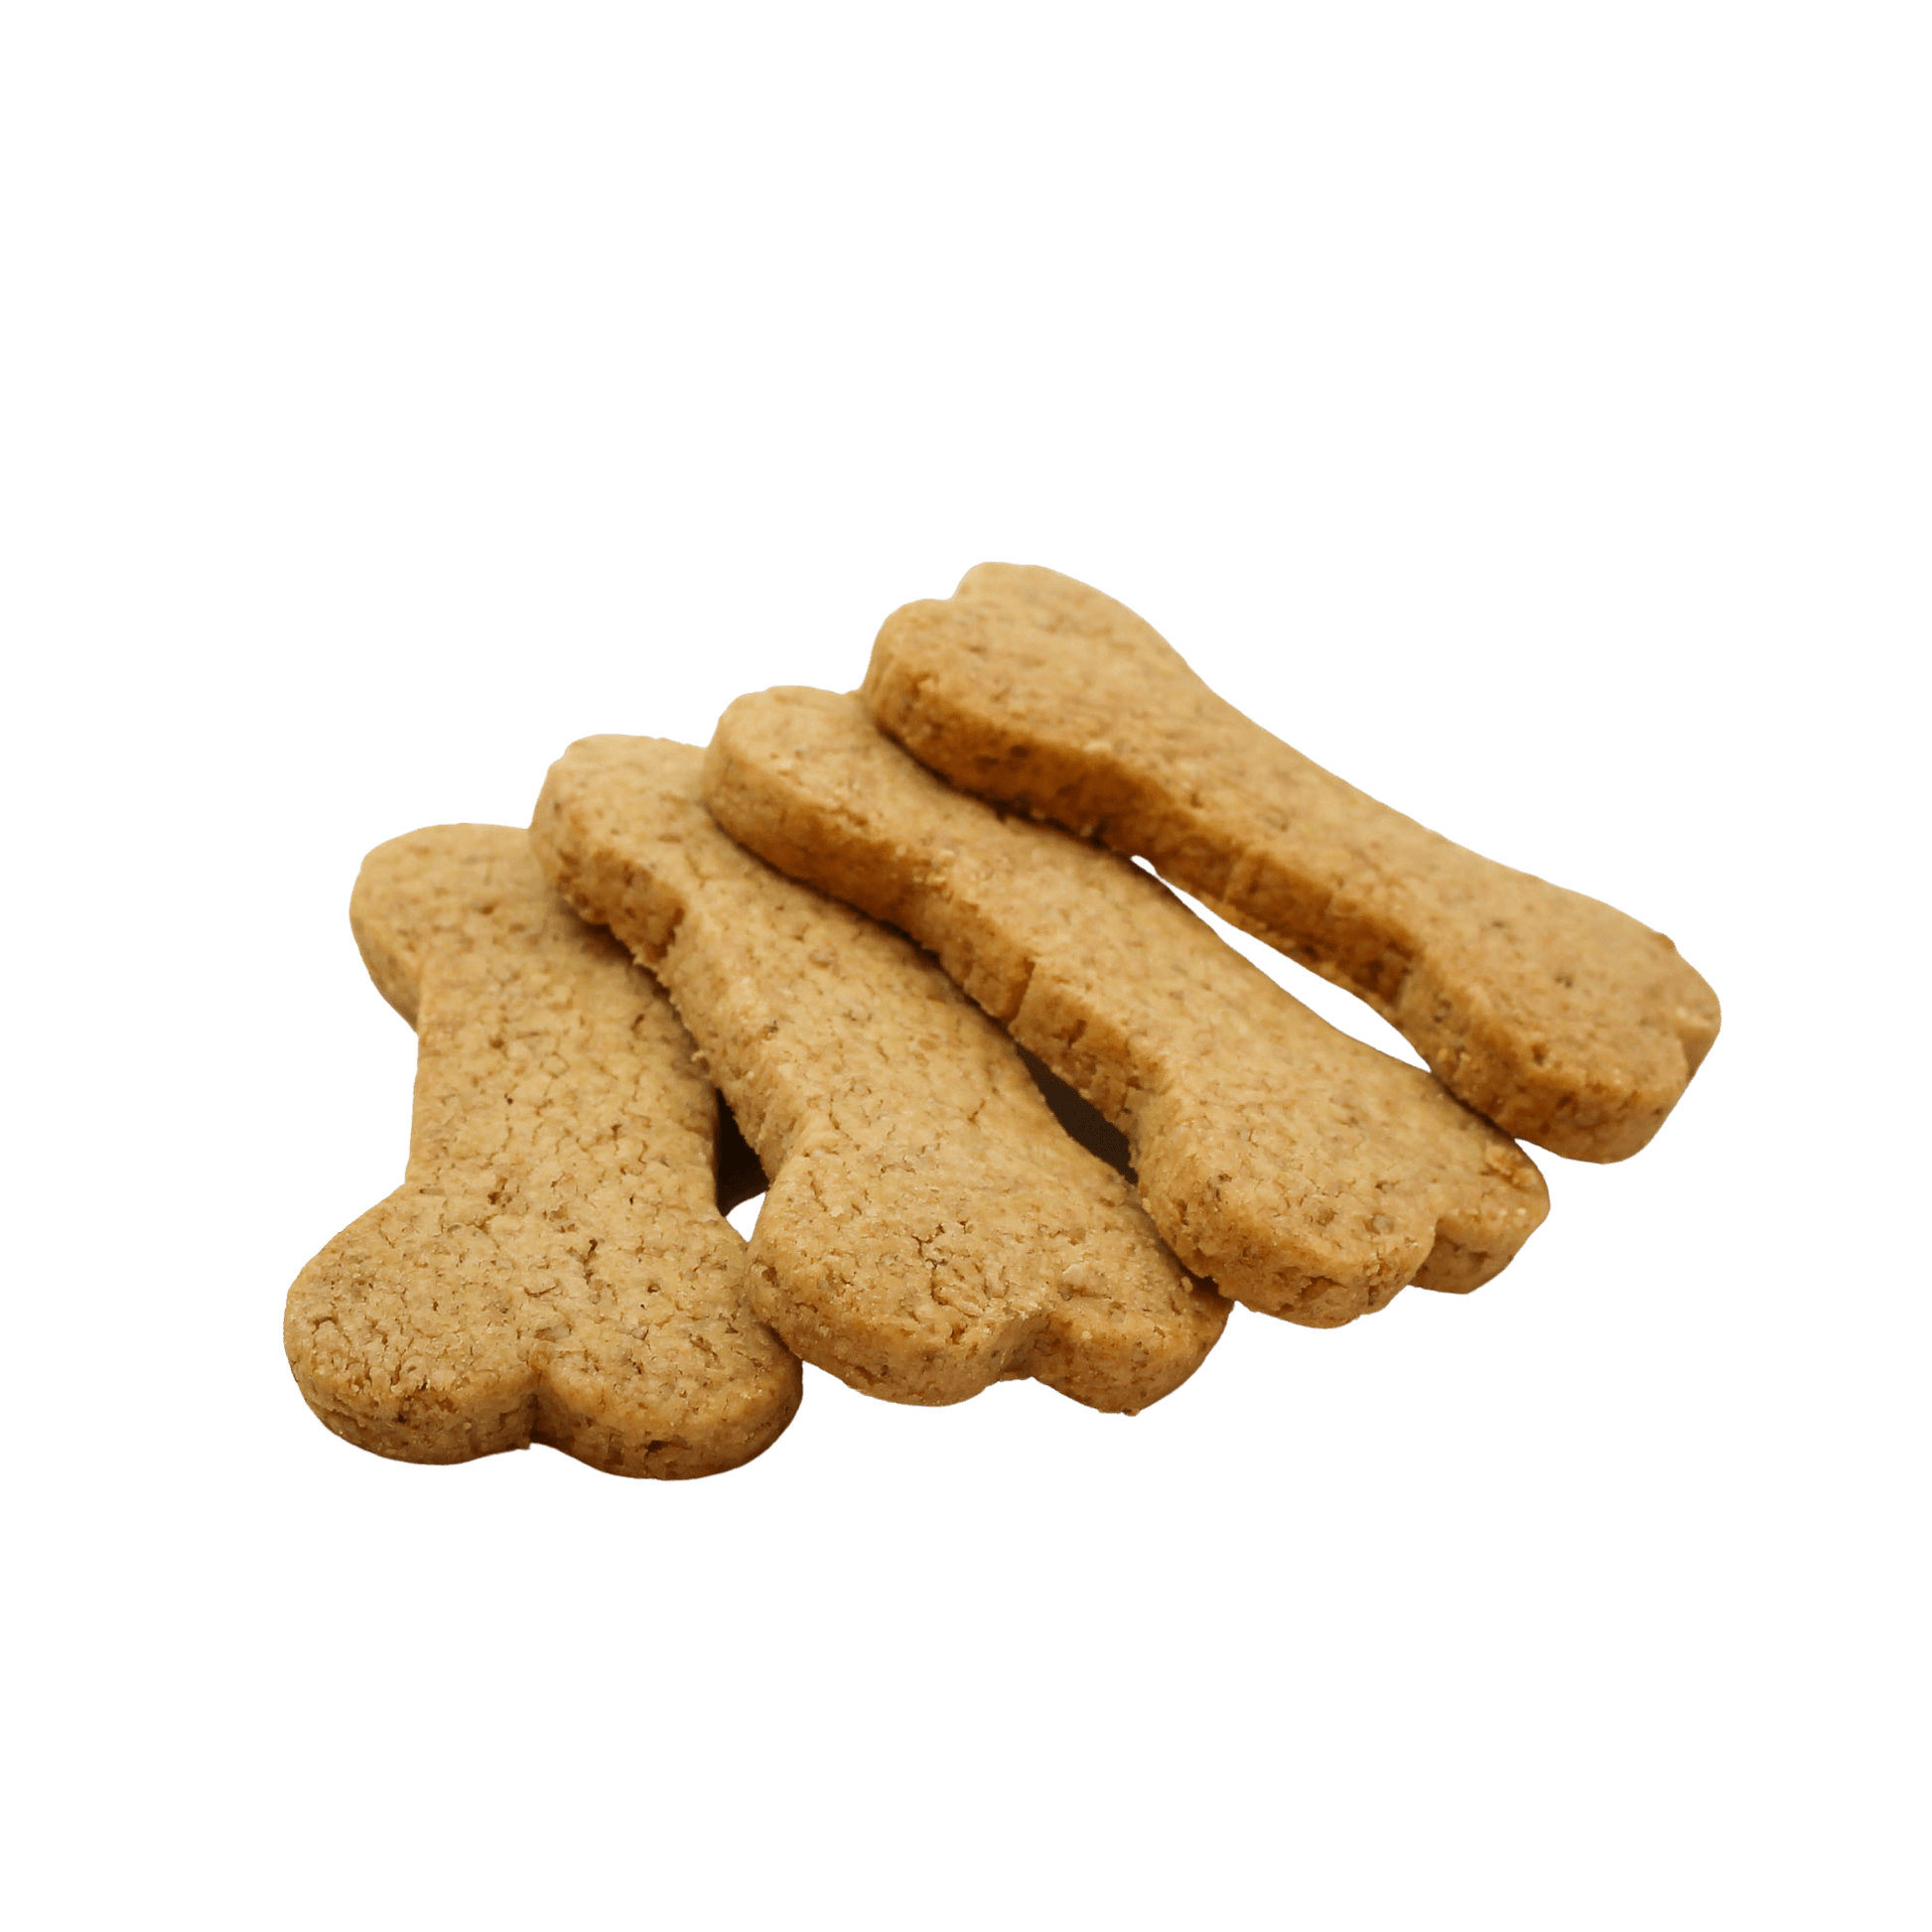 【宅配犬用おやつ】ワンちゃん用 骨型ボーンクッキー20枚入り - 魔法洋菓子店ソルシエWEBストア